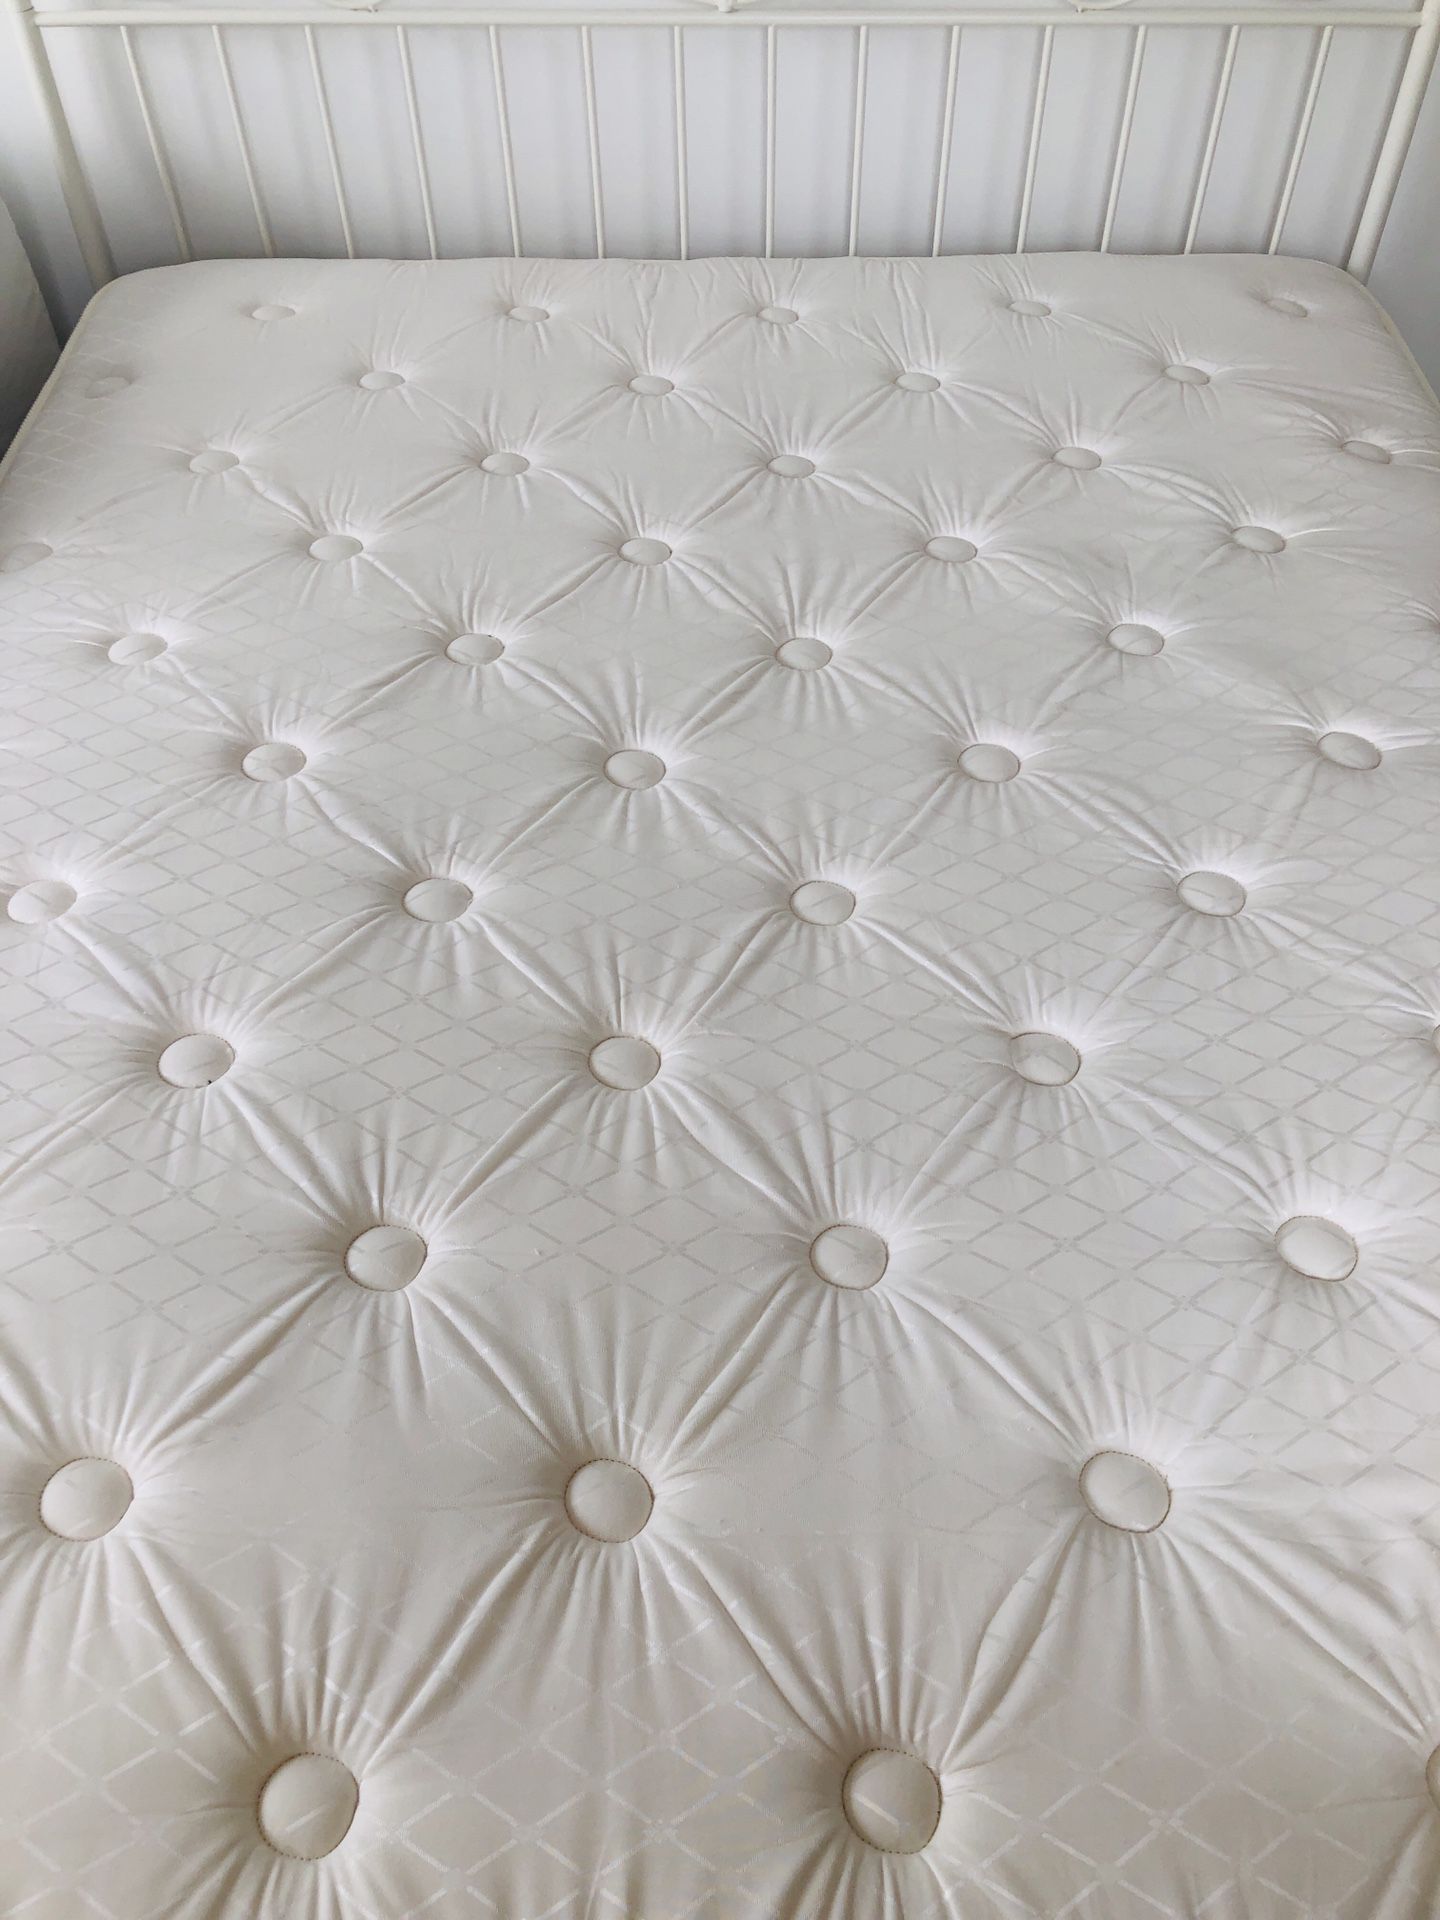 Like-new queen mattress